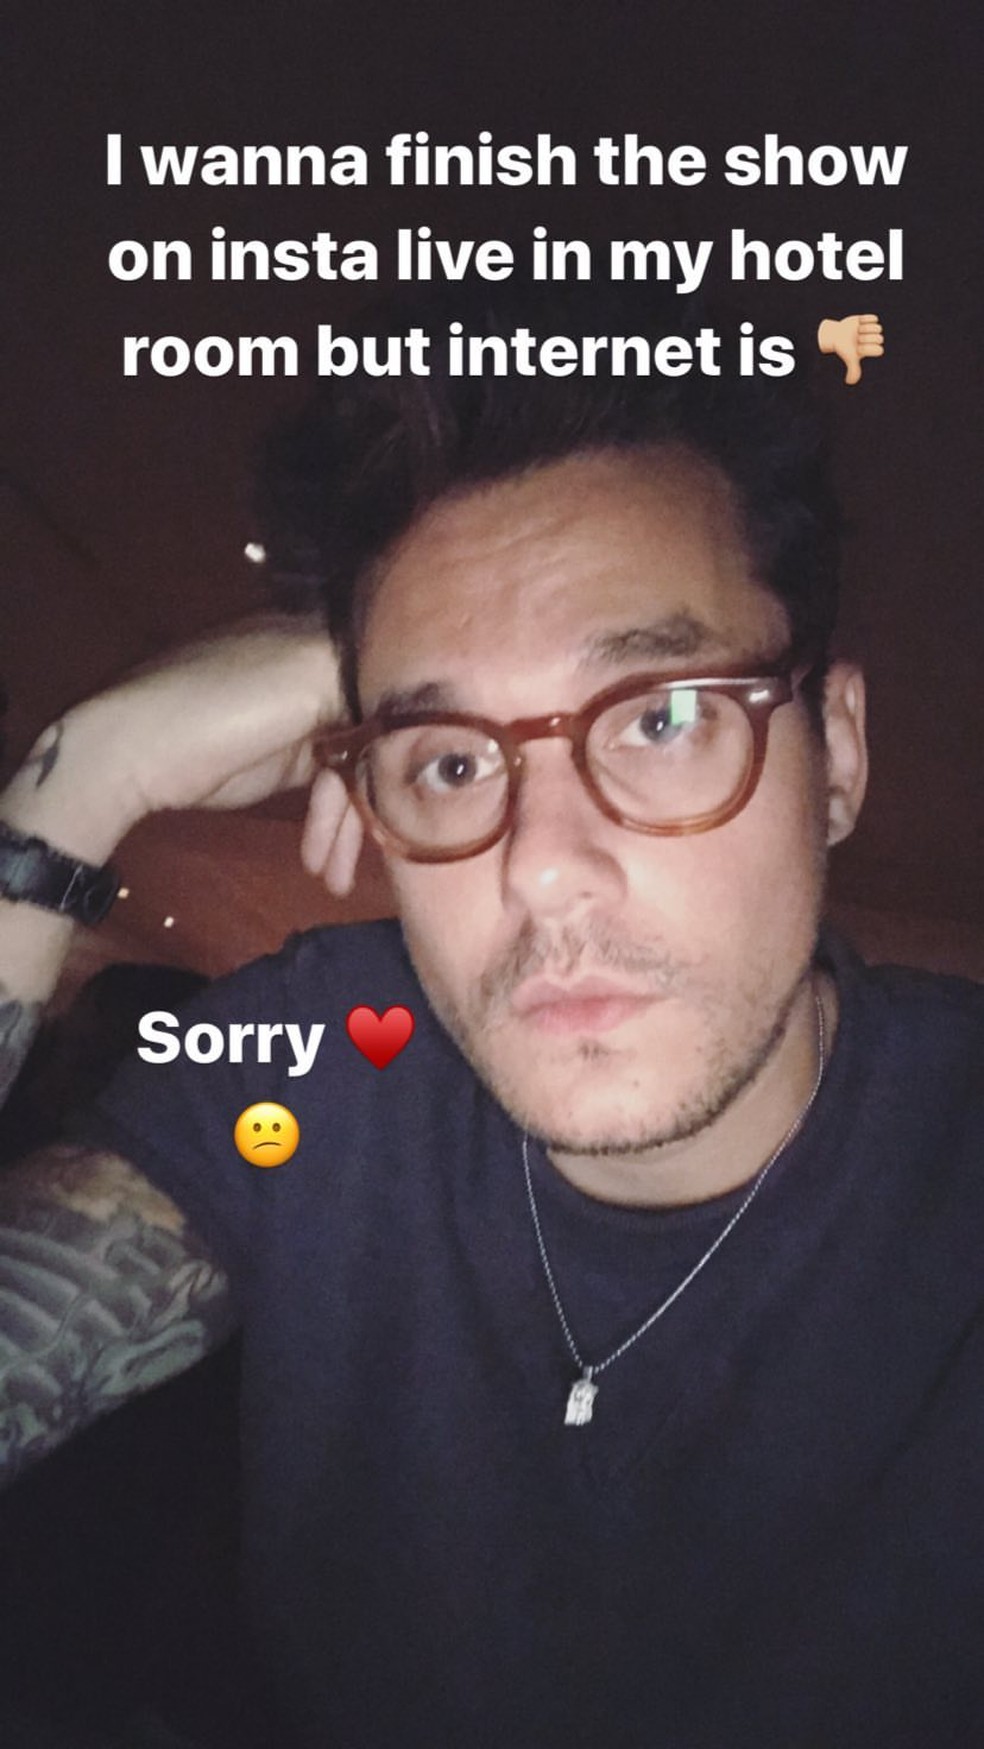 John Mayer após deixar show em Buenos Aires por causa da chuva: “Queria terminar o show pelo Live do Instagram no quarto do hotel, mas a internet está (ruim)”. (Foto: Reprodução/Instagram)